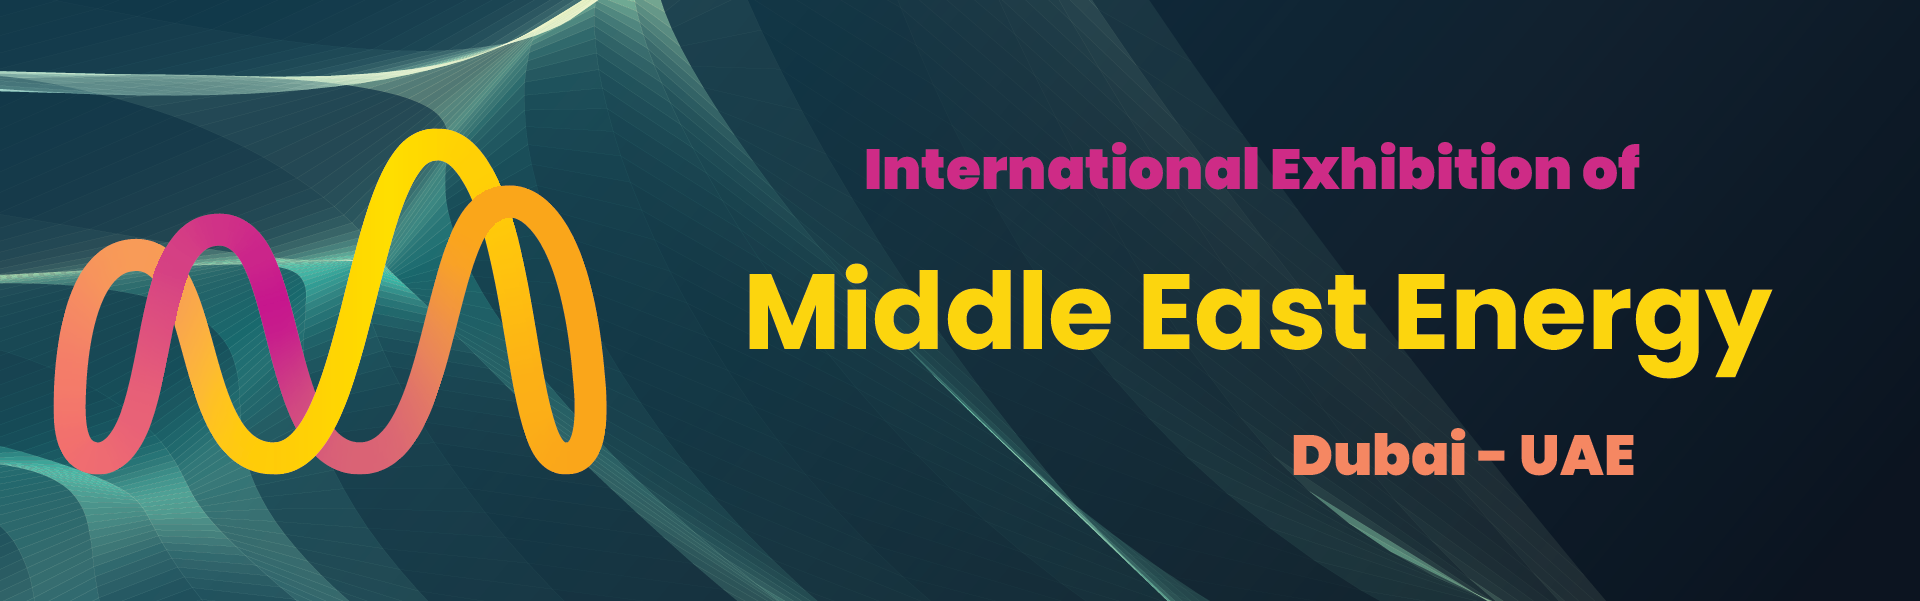 Middle East Energy Exhibition Dubai United Arab Emirates